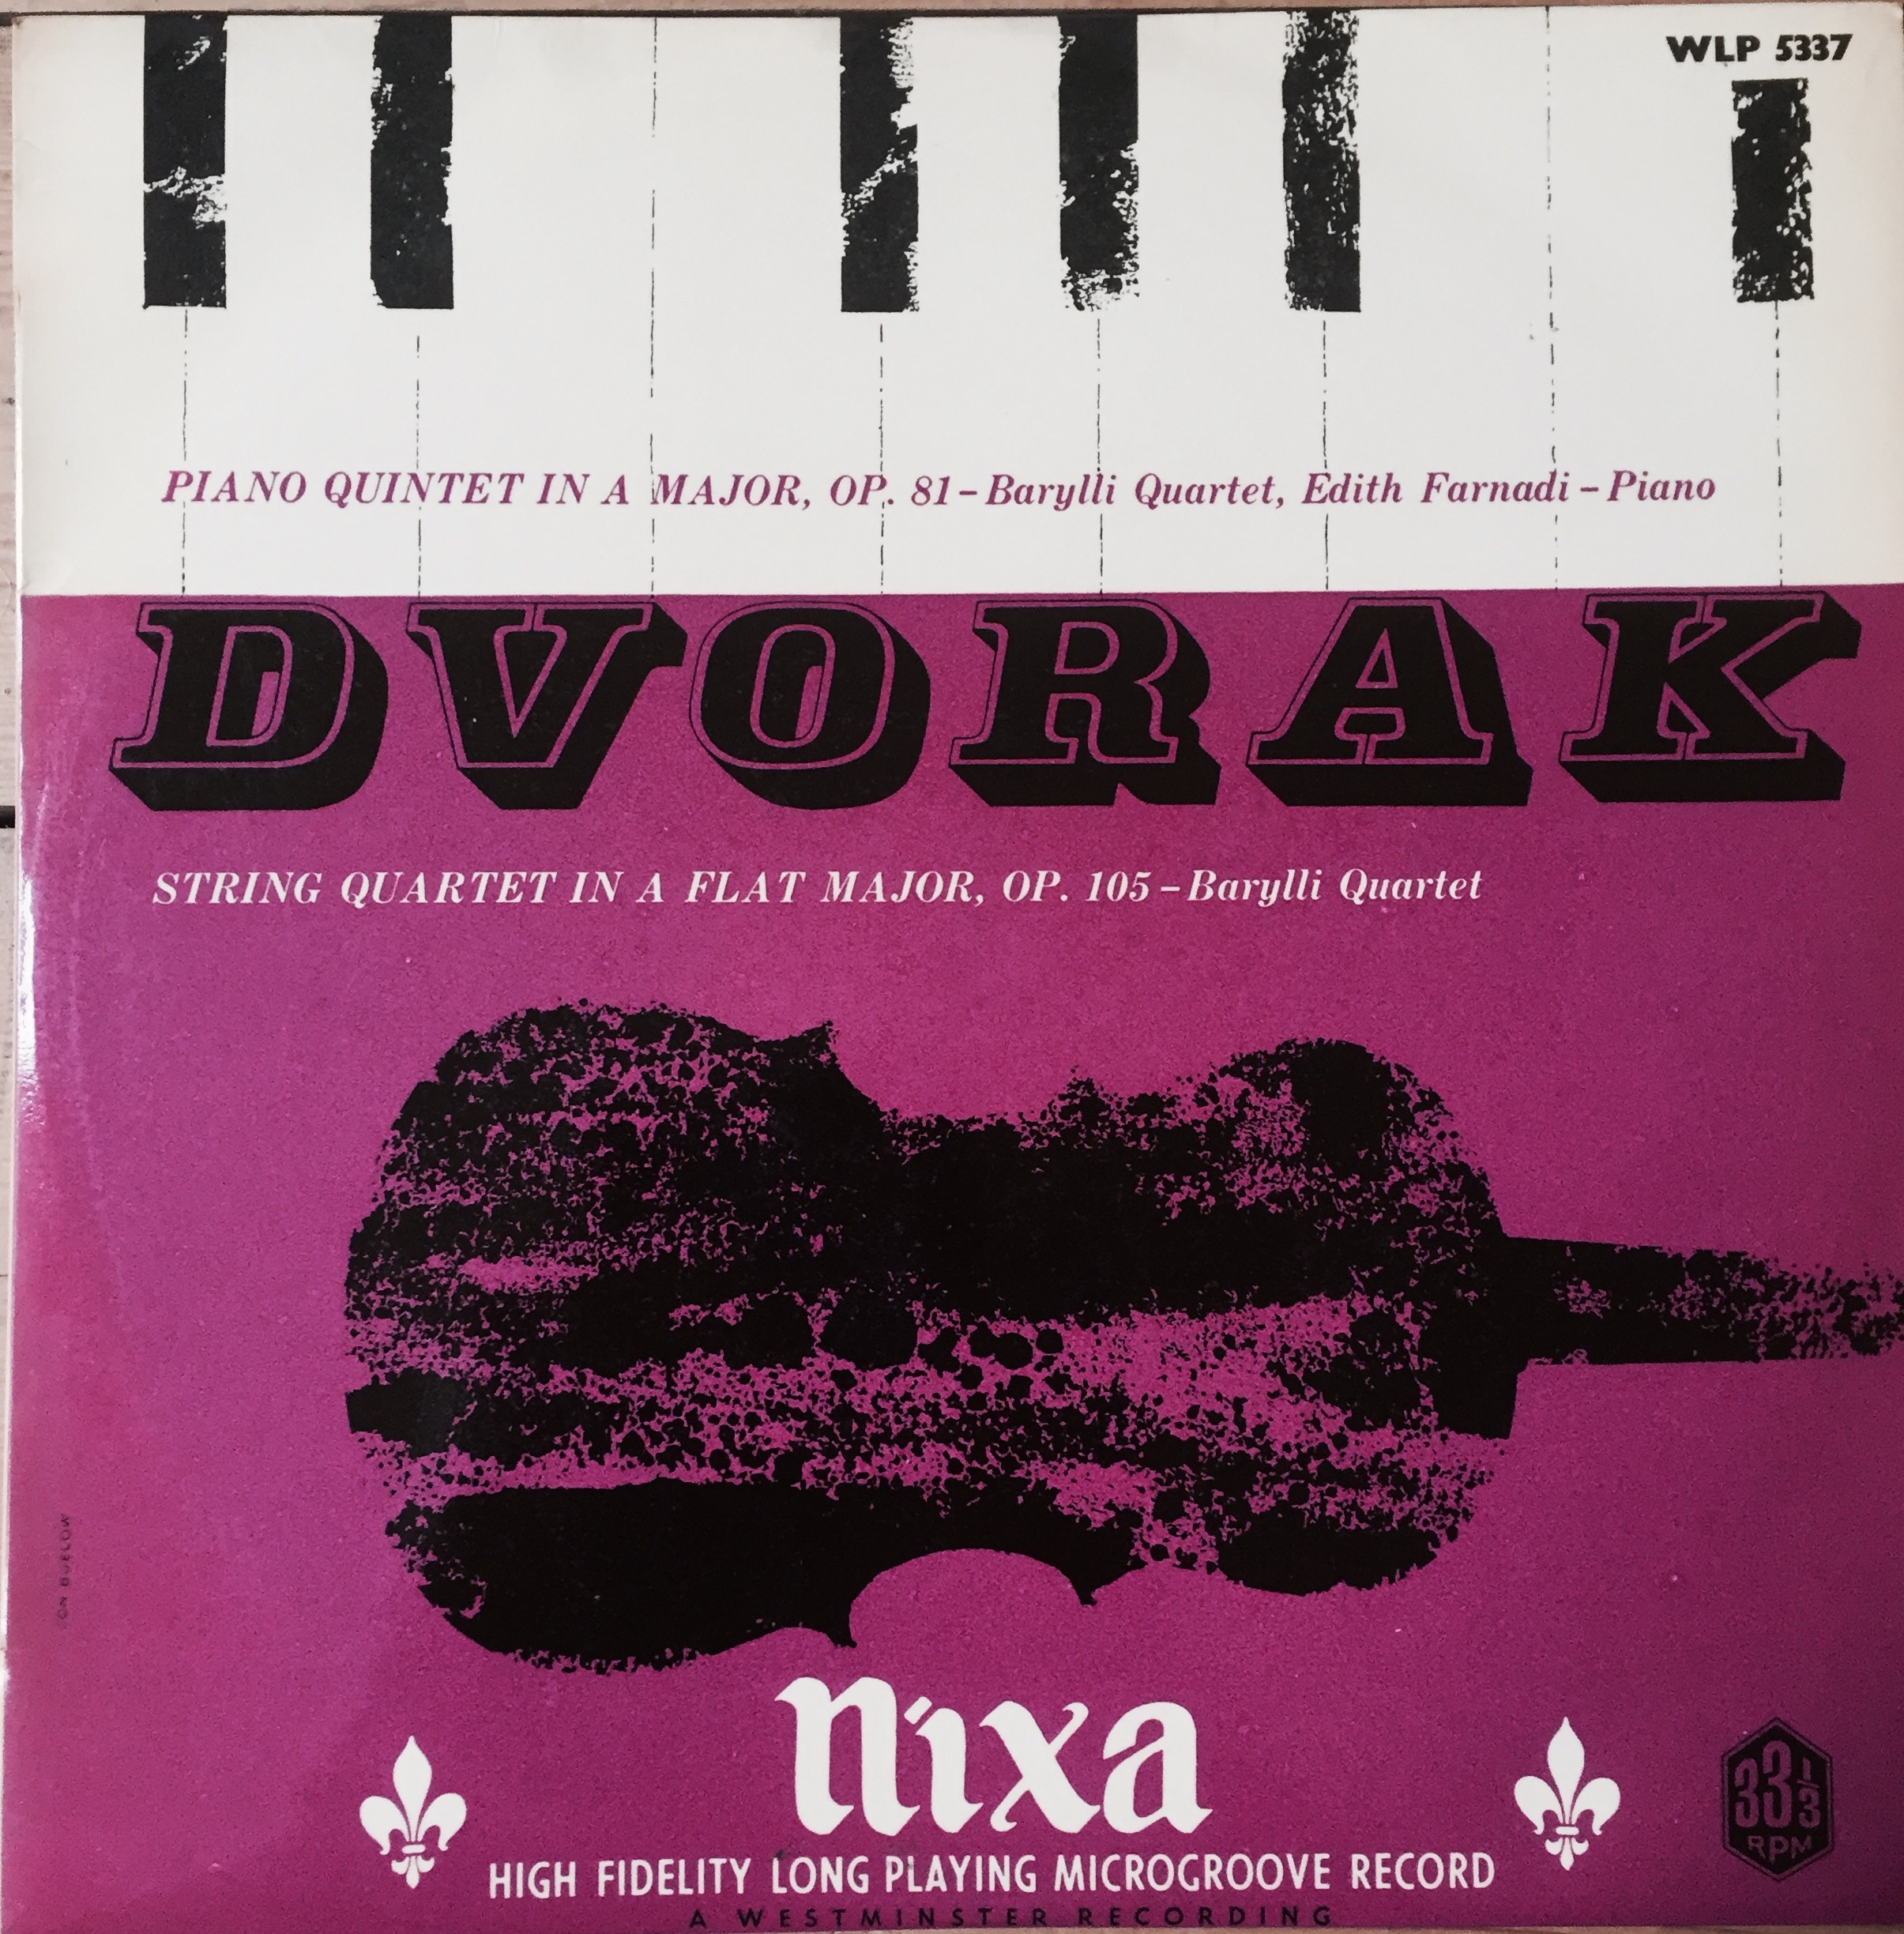 WLP 5337 Dvorak Piano Quintet in A / String Quartet in Ab / Barylli Quartet